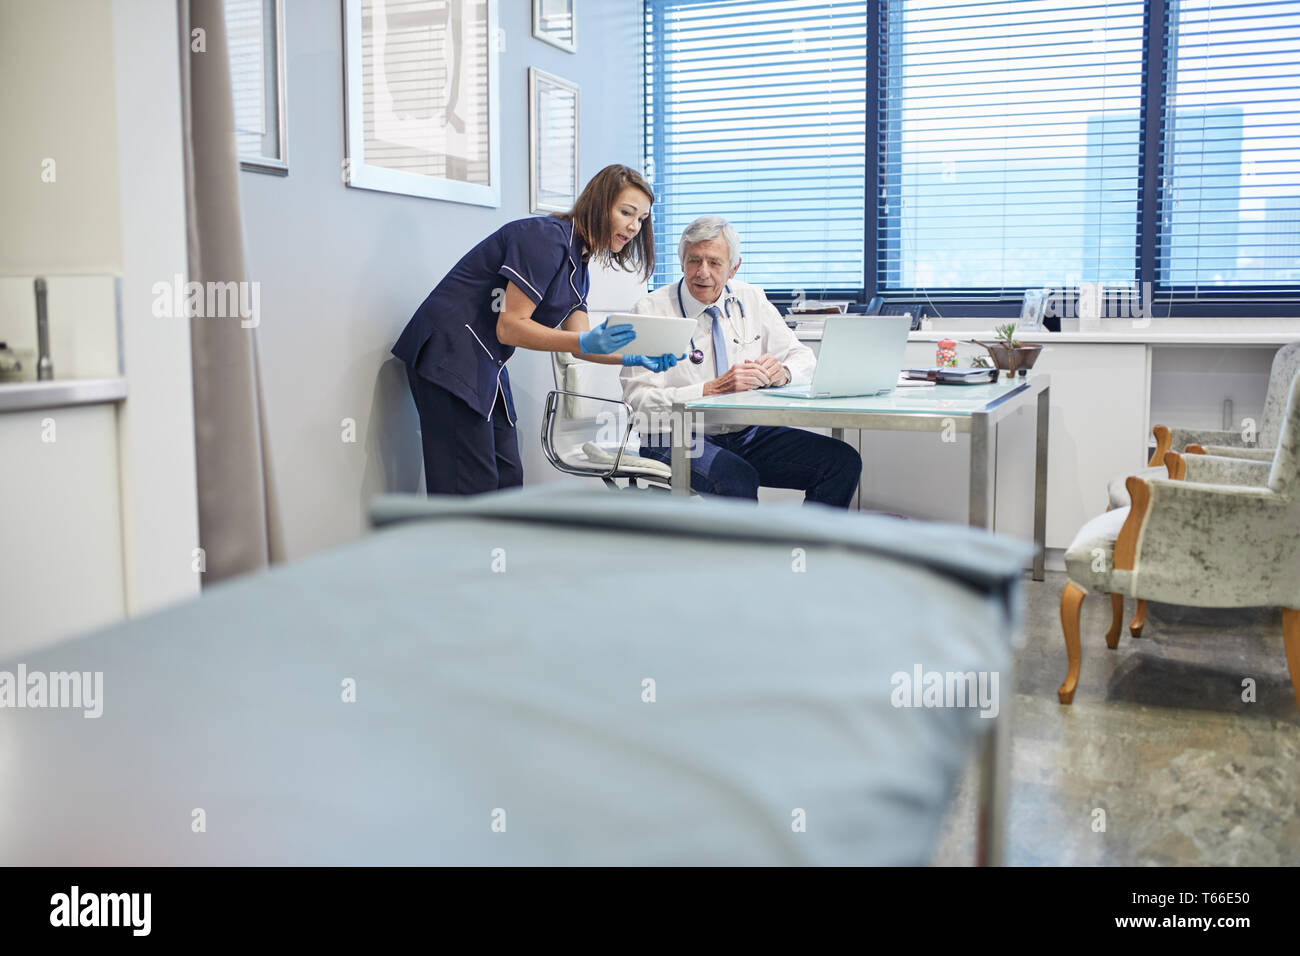 Doctor and nurse using digital tablet, conseil en pratique clinique office Banque D'Images